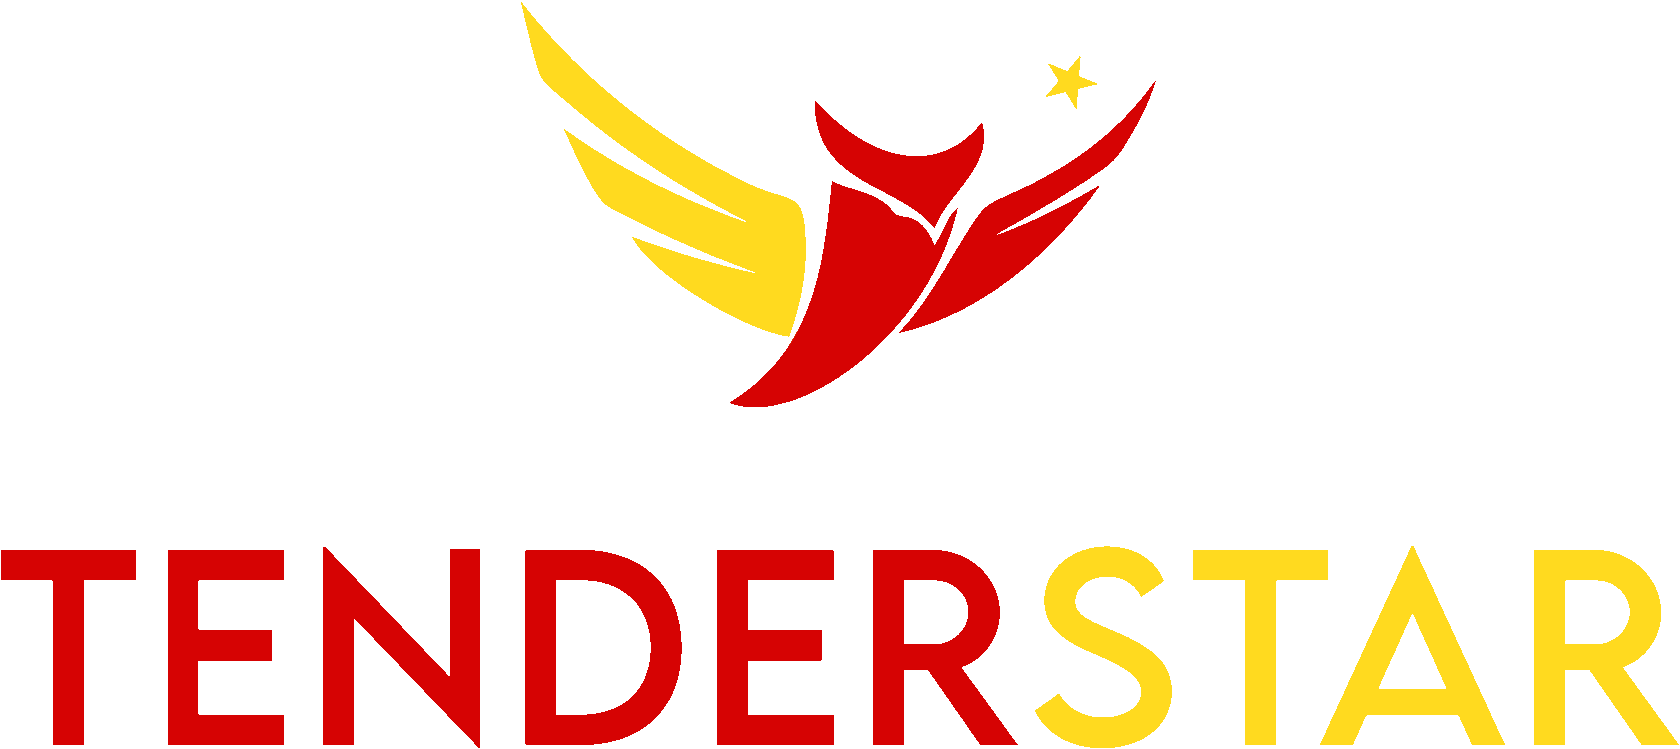  TENDER STAR 